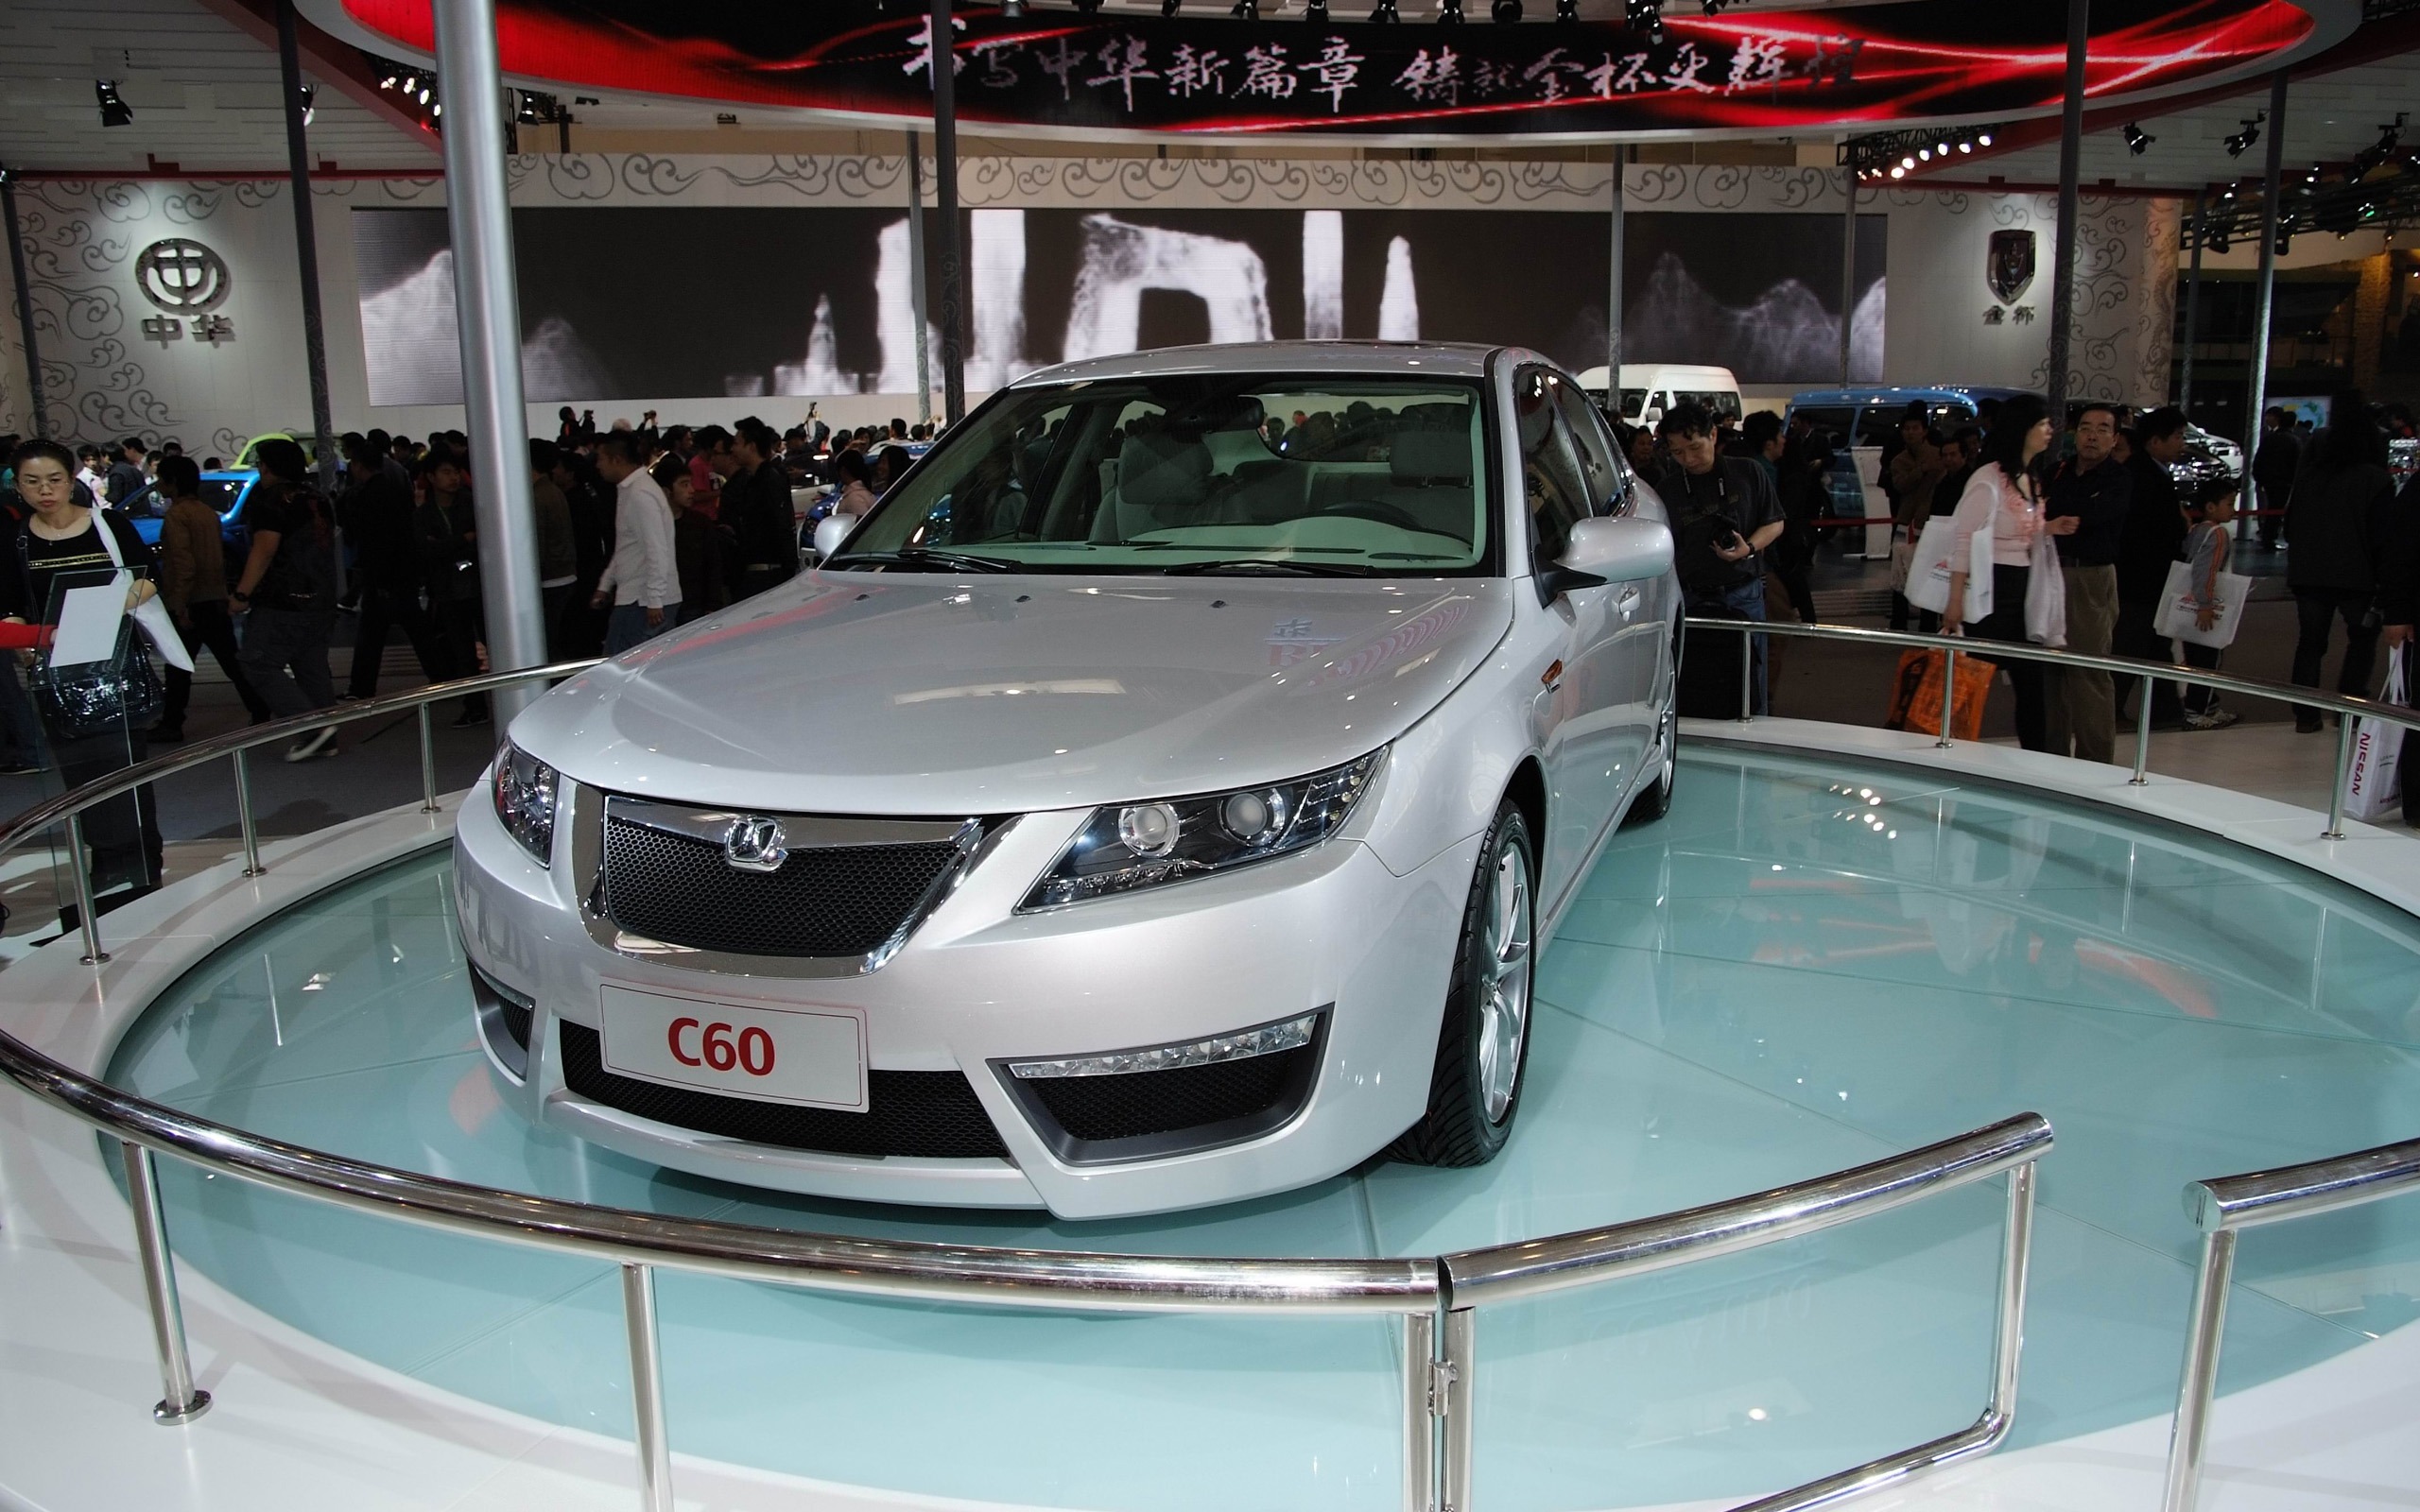 2010北京国际车展 香车 (螺纹钢作品)9 - 2560x1600